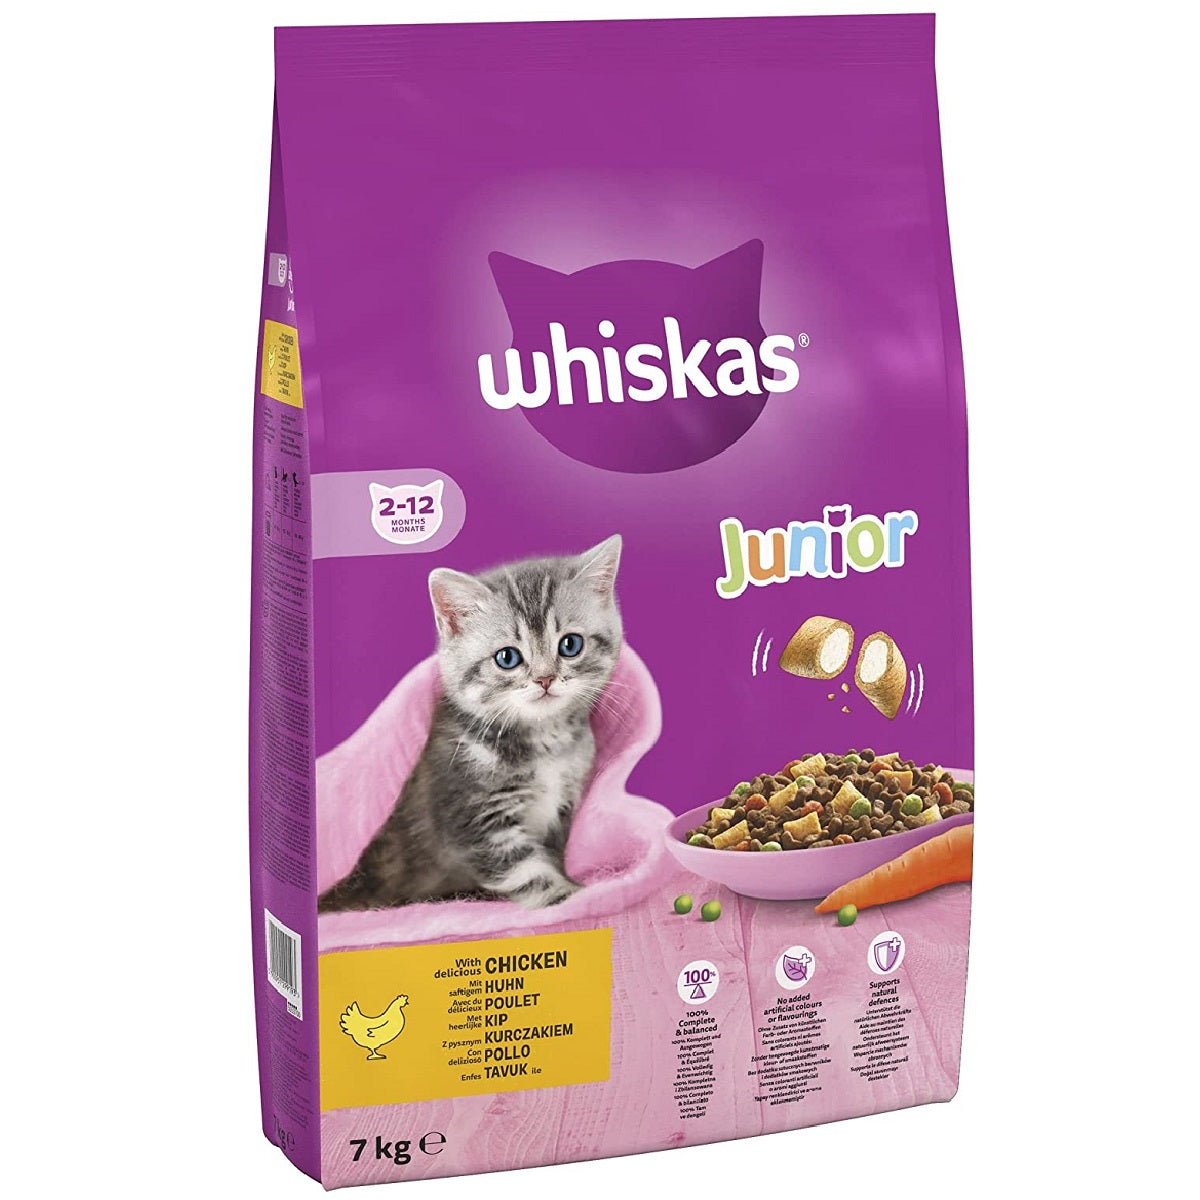 Whiskas - Kitten